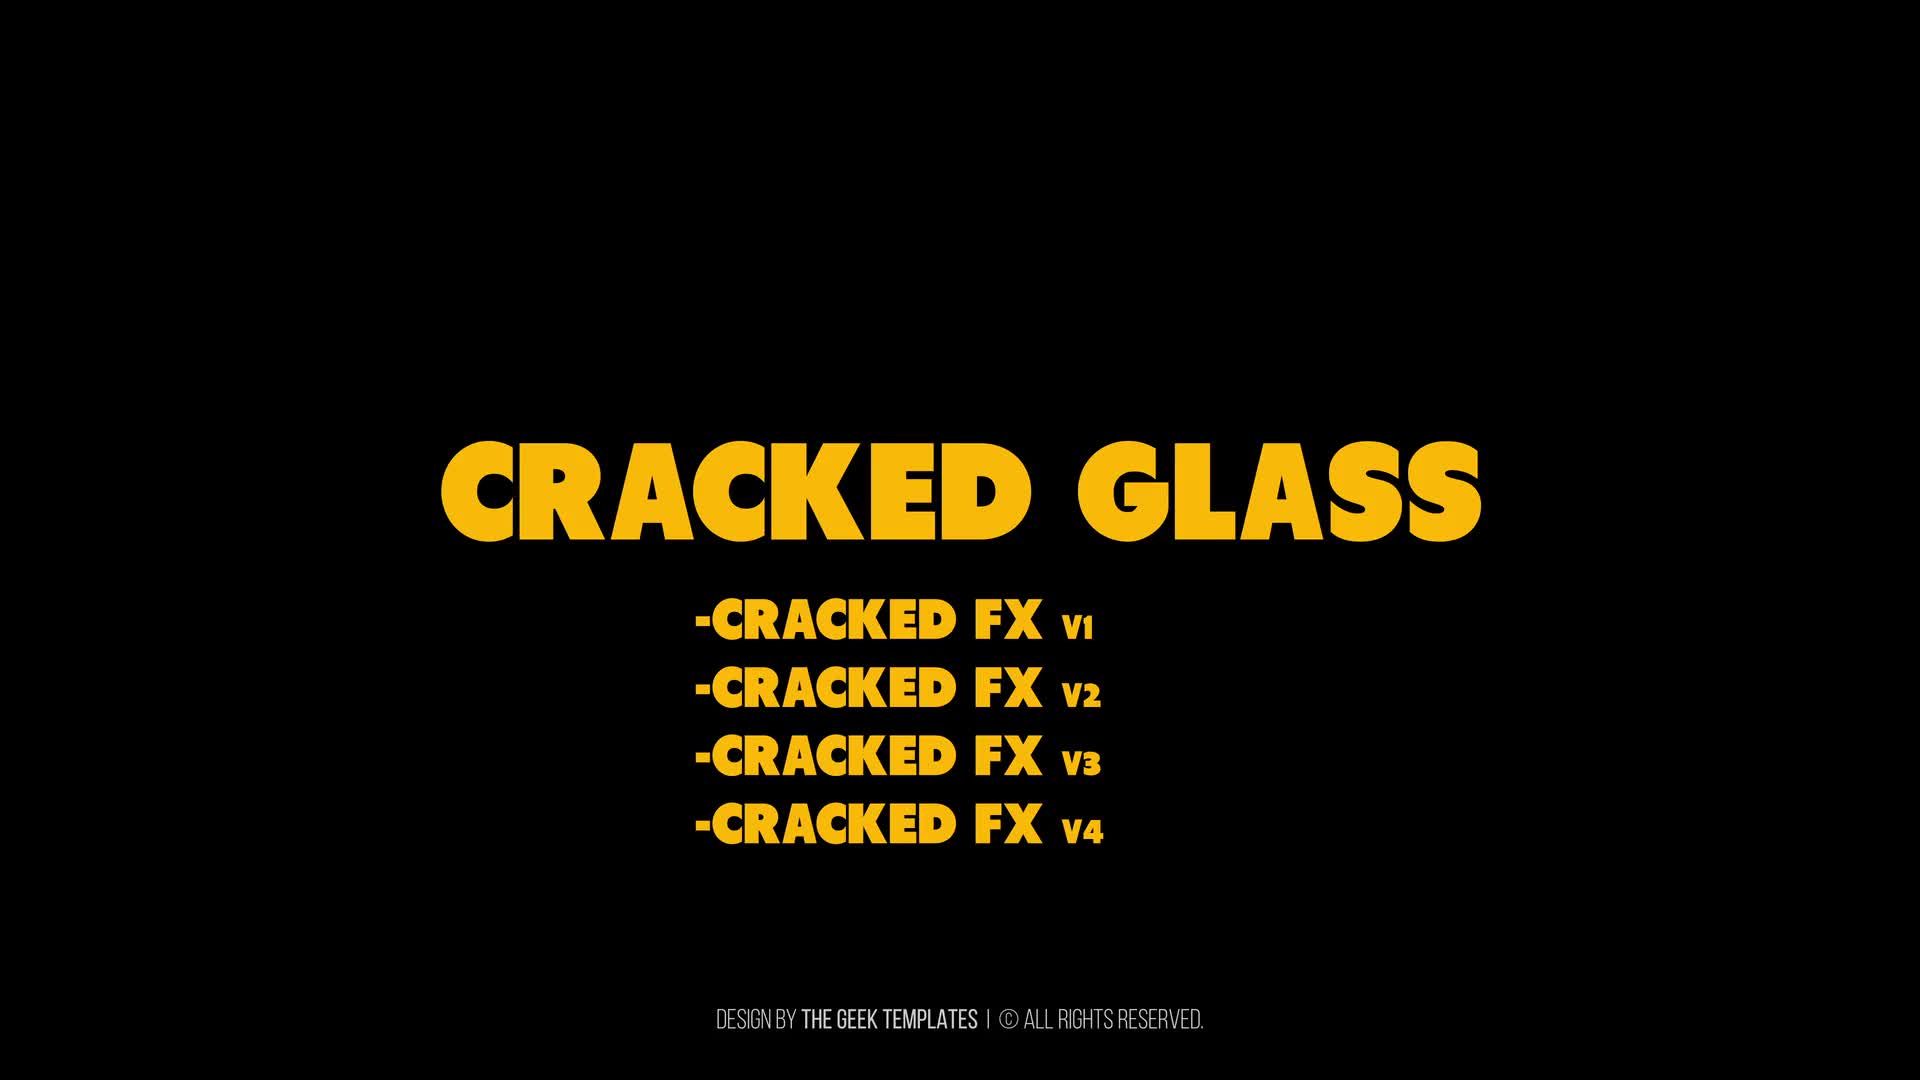 Cracked Glass I Premiere Videohive 39125108 Premiere Pro Image 1